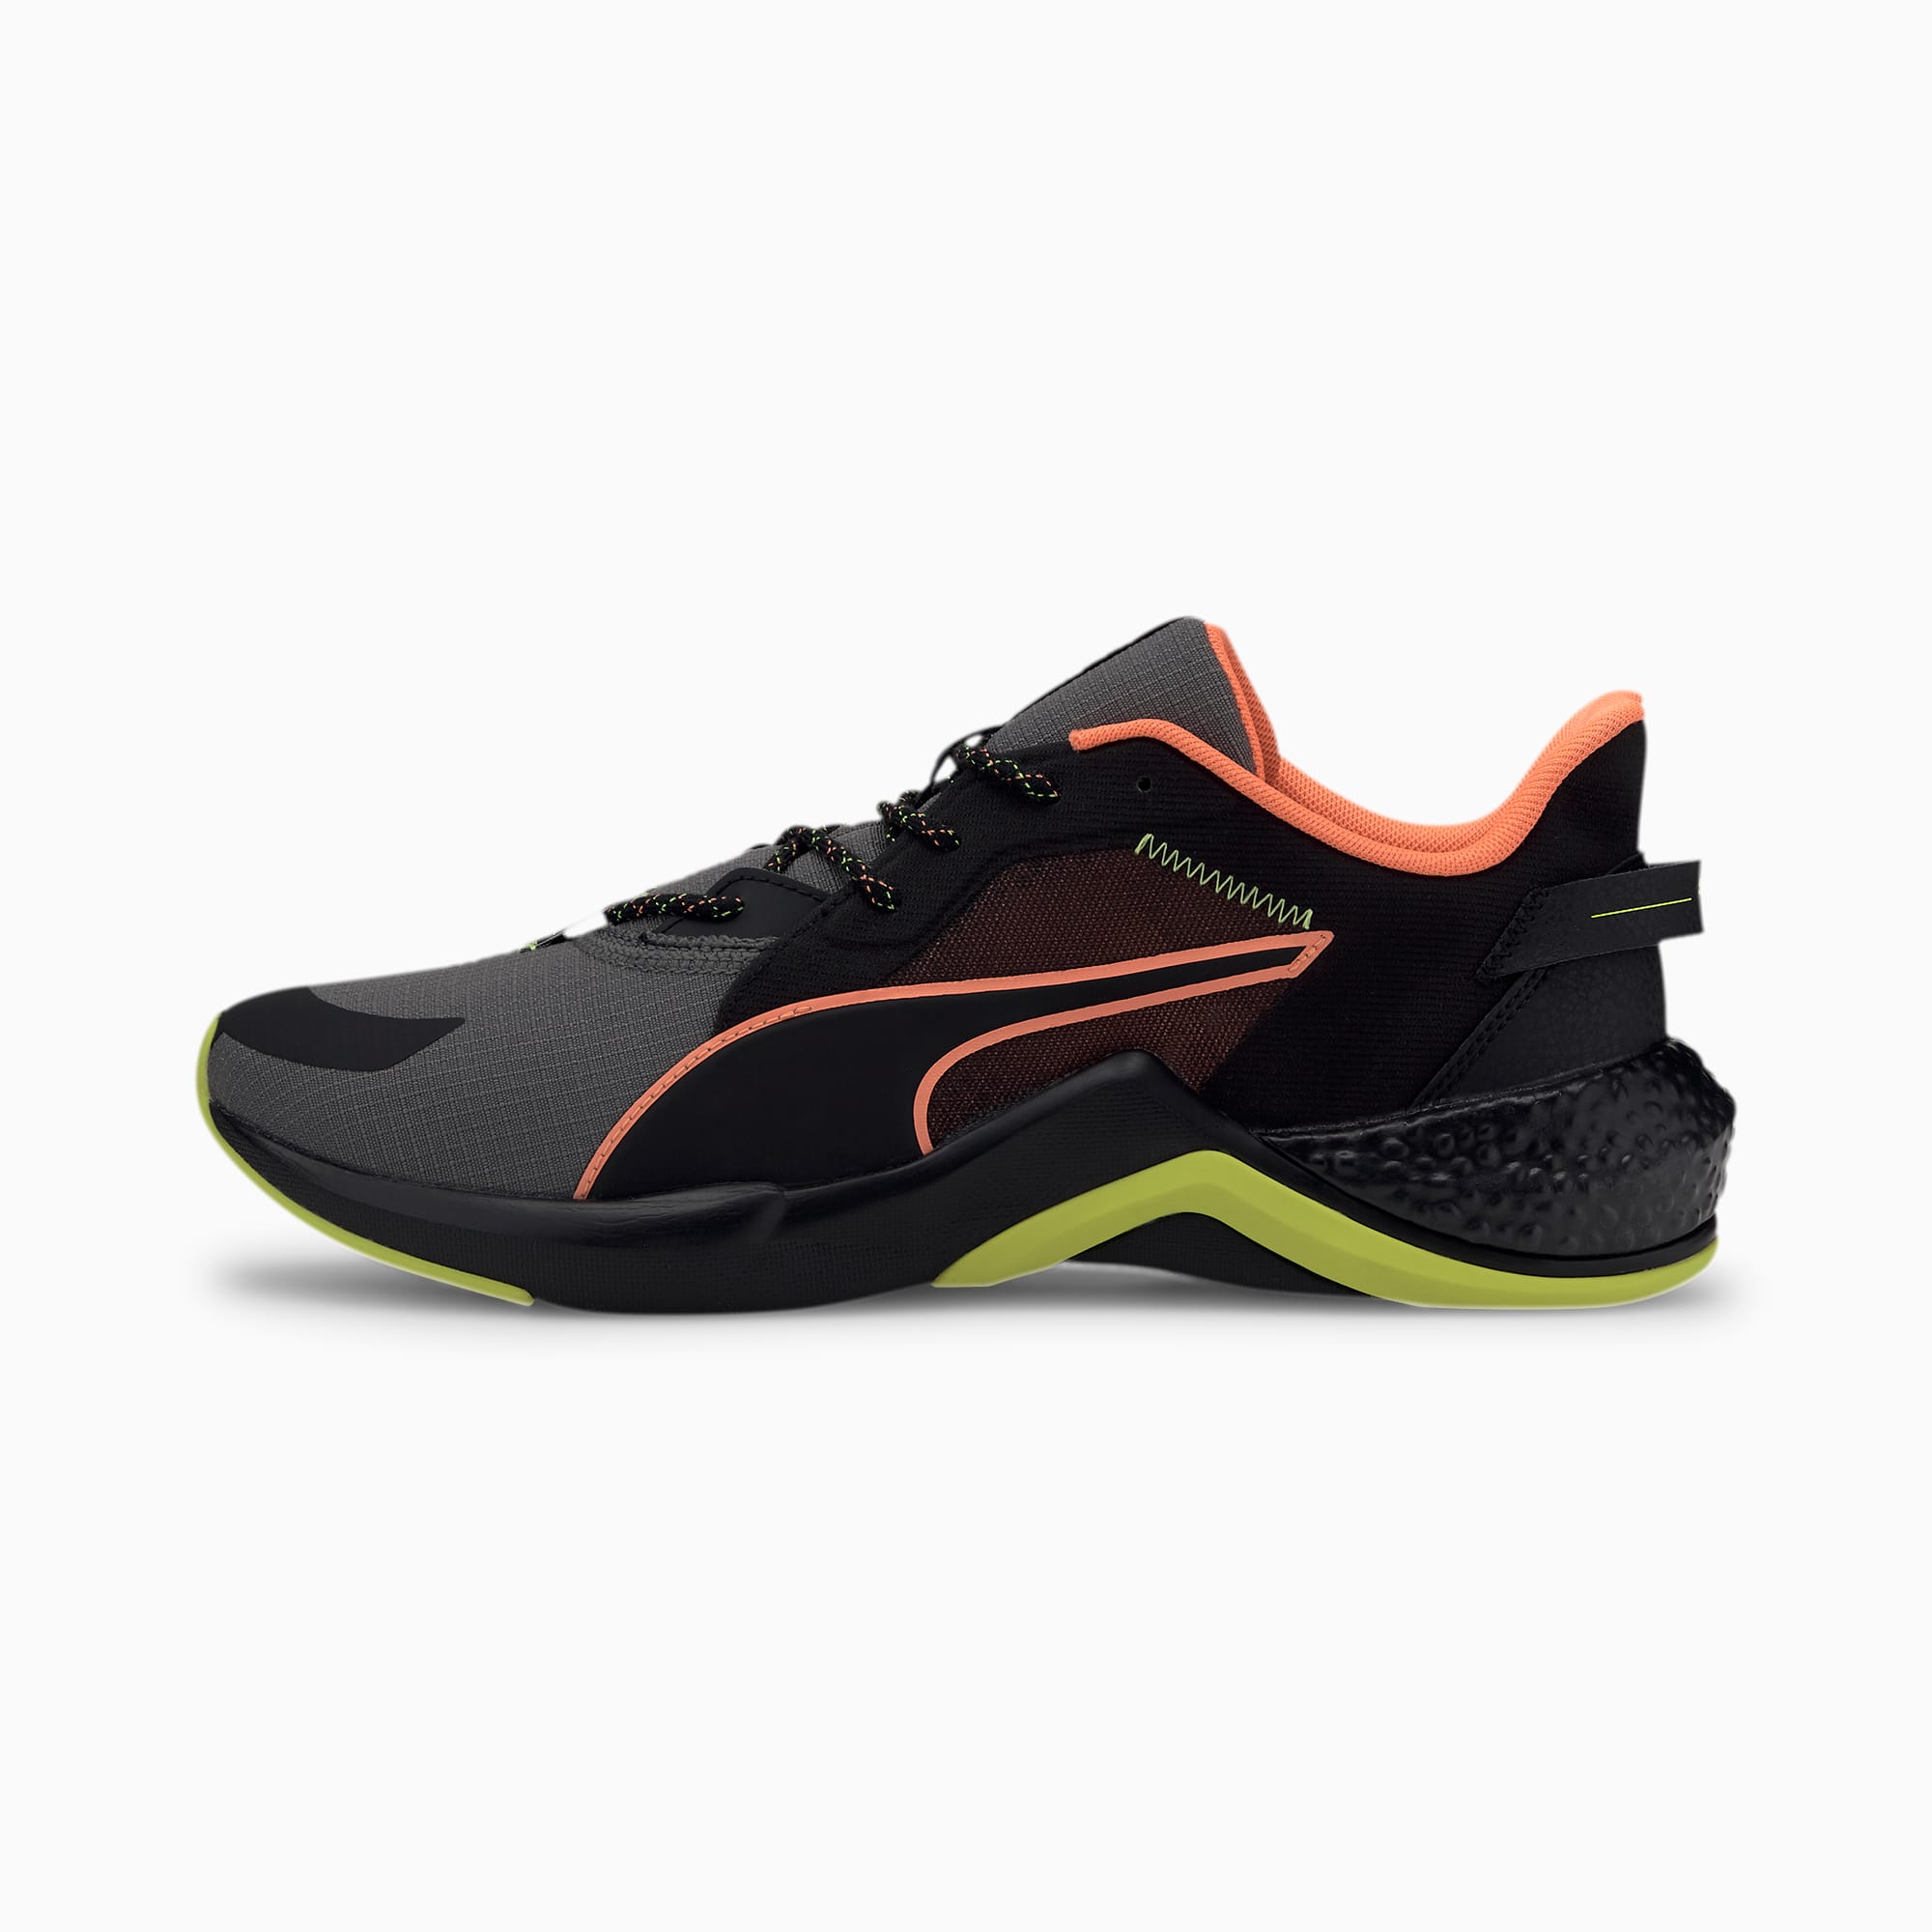 PUMA x FIRST MILE HYBRID NX Ozone Men's Running Shoes | PUMA Hybrid  Footwear | PUMA United Kingdom